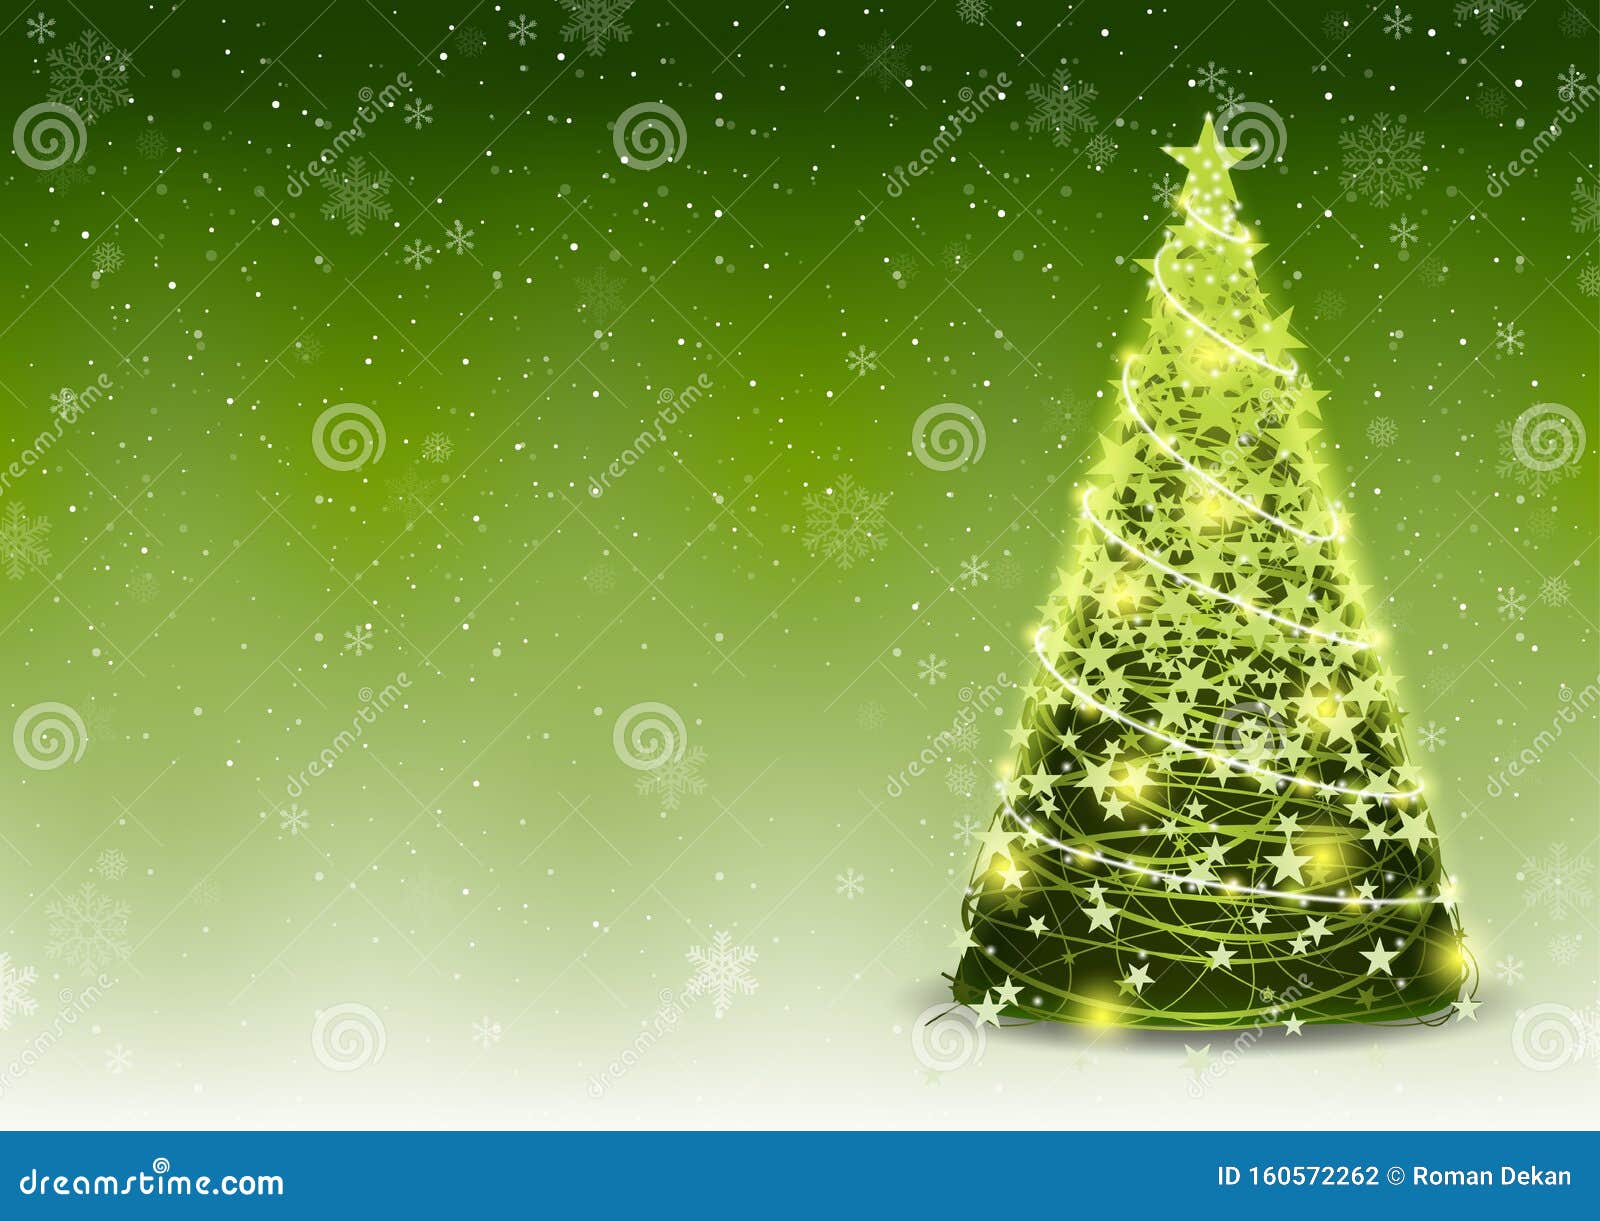 Cây thông Giáng Sinh màu xanh với tuyết rơi nền là một cảnh tượng lãng mạn và thú vị vào mùa giáng sinh. Bạn có thể tưởng tượng được sự ấm áp và hạnh phúc mà nó mang lại. Hãy xem hình ảnh để cảm nhận sự tuyệt vời của cây thông Giáng Sinh này.